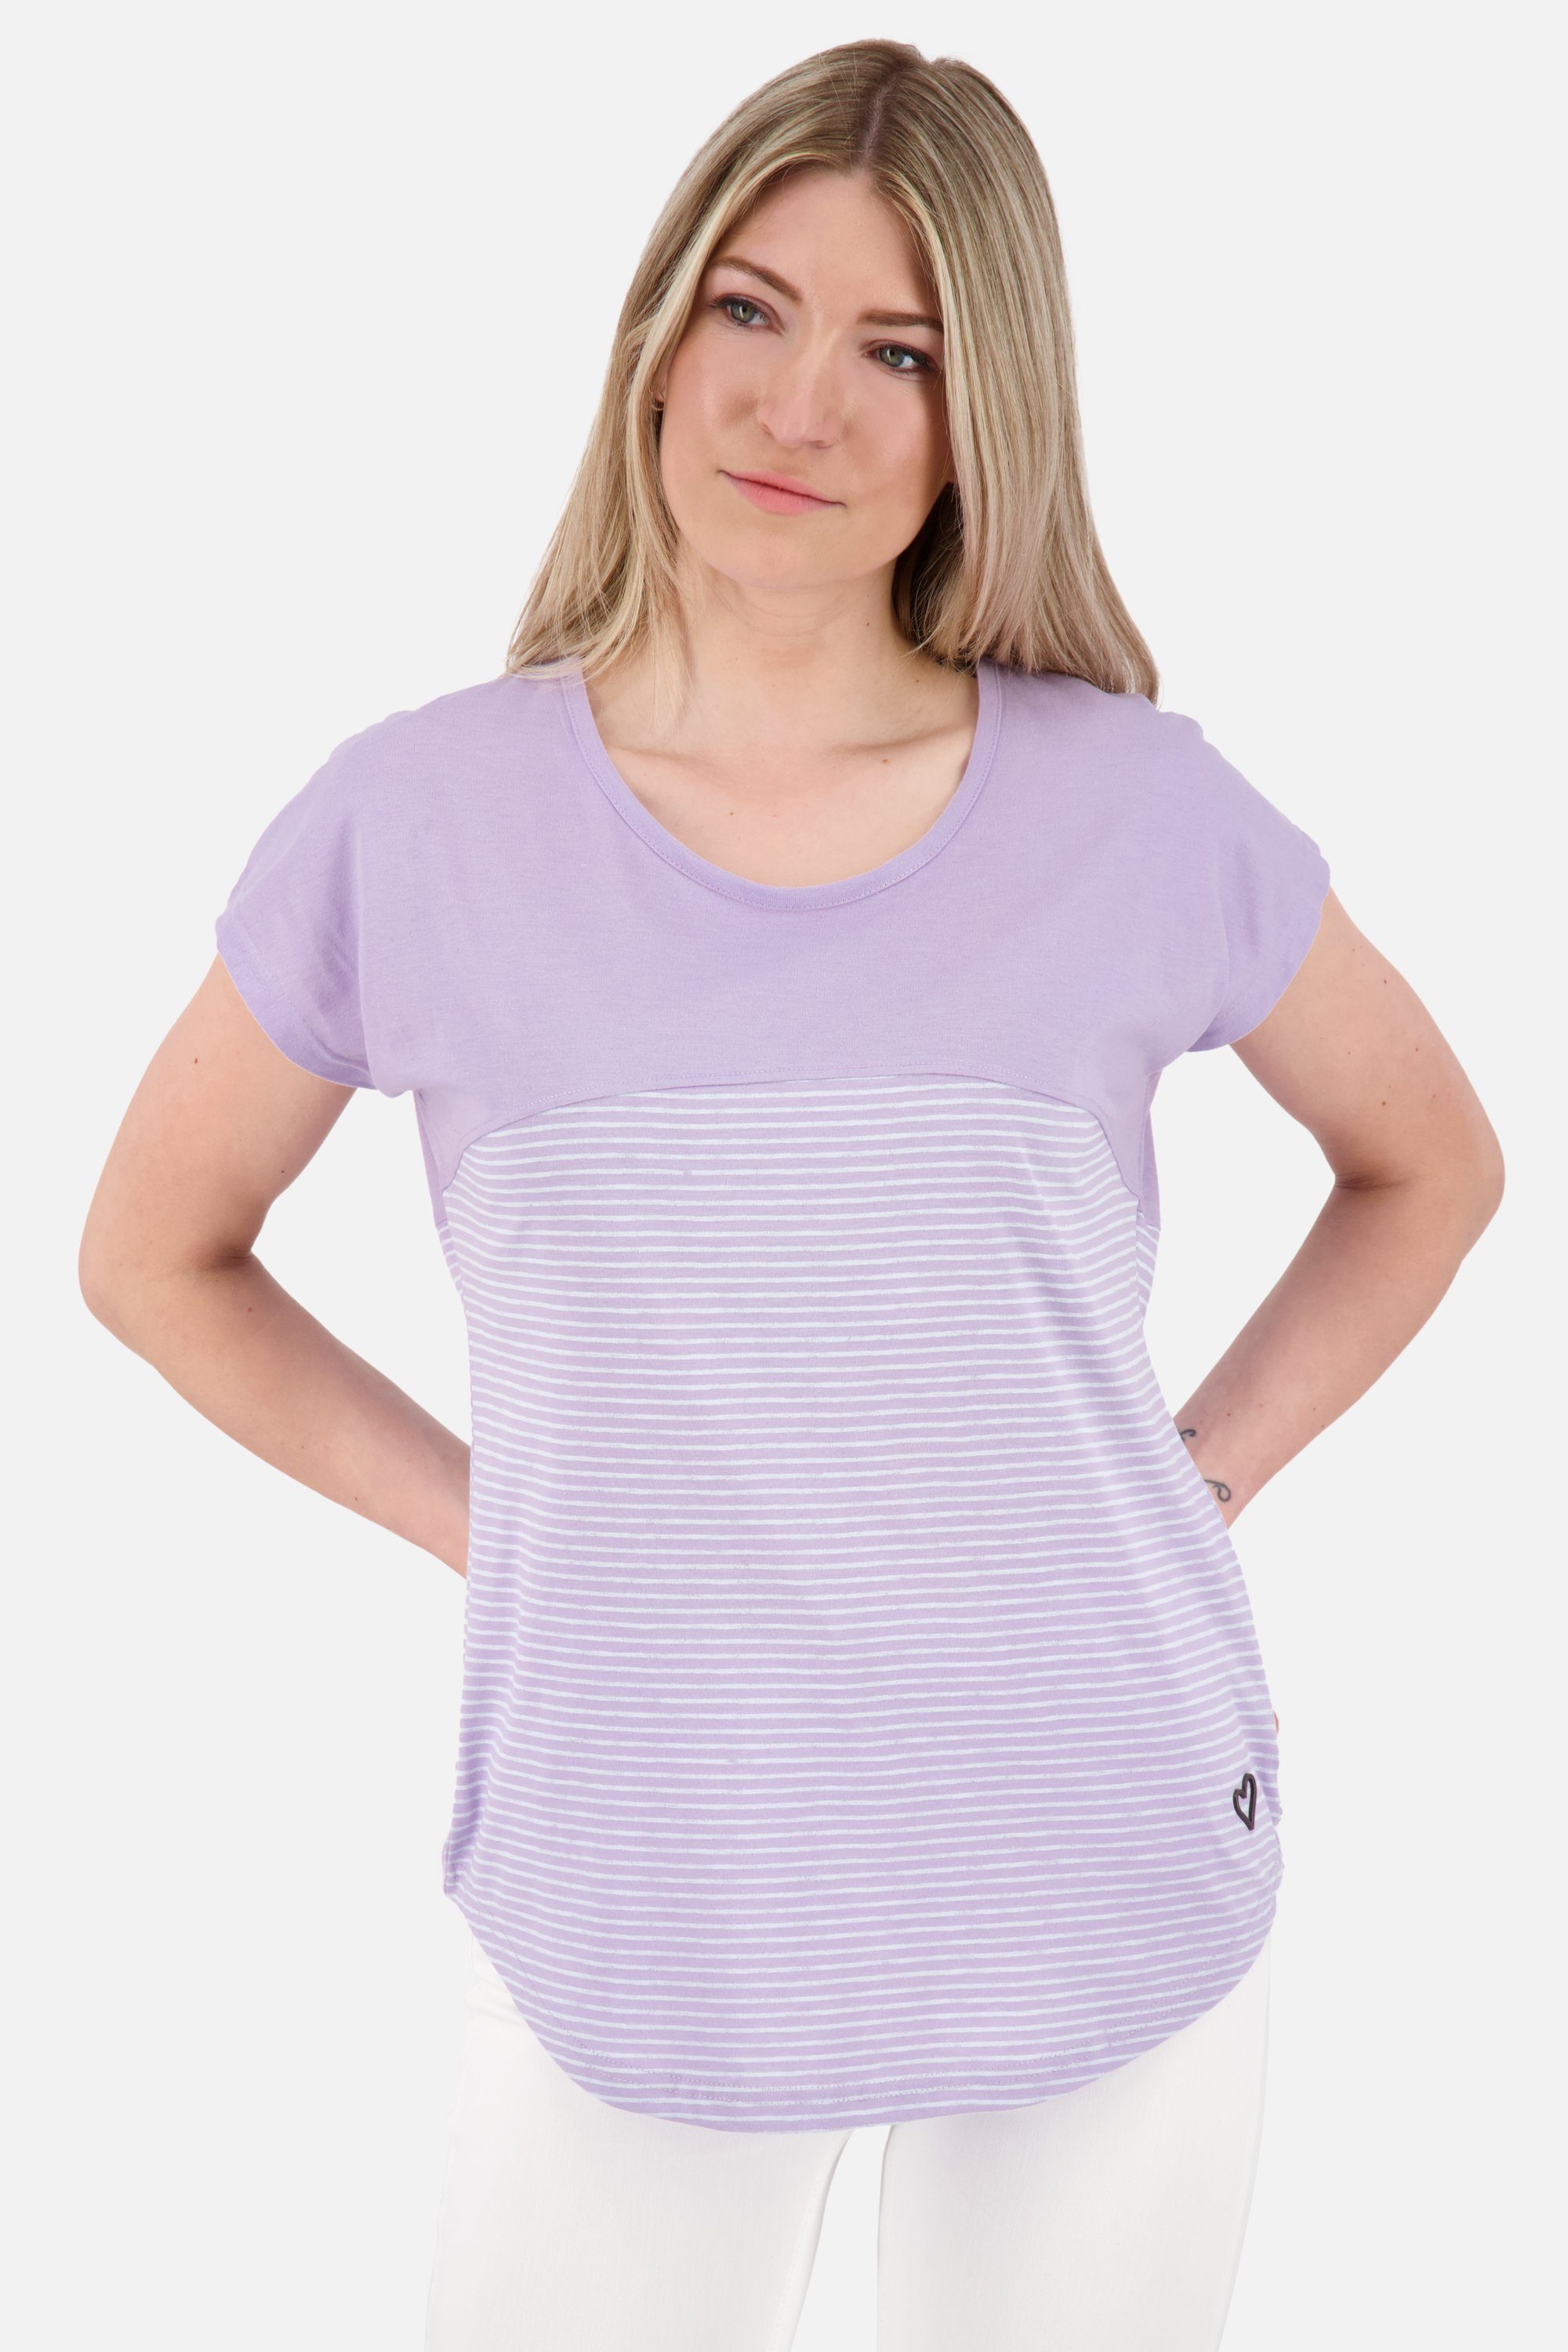 digital Z ClarettaAK Rundhalsshirt Shirt & Shirt lavender Damen Kickin Alife Kurzarmshirt,